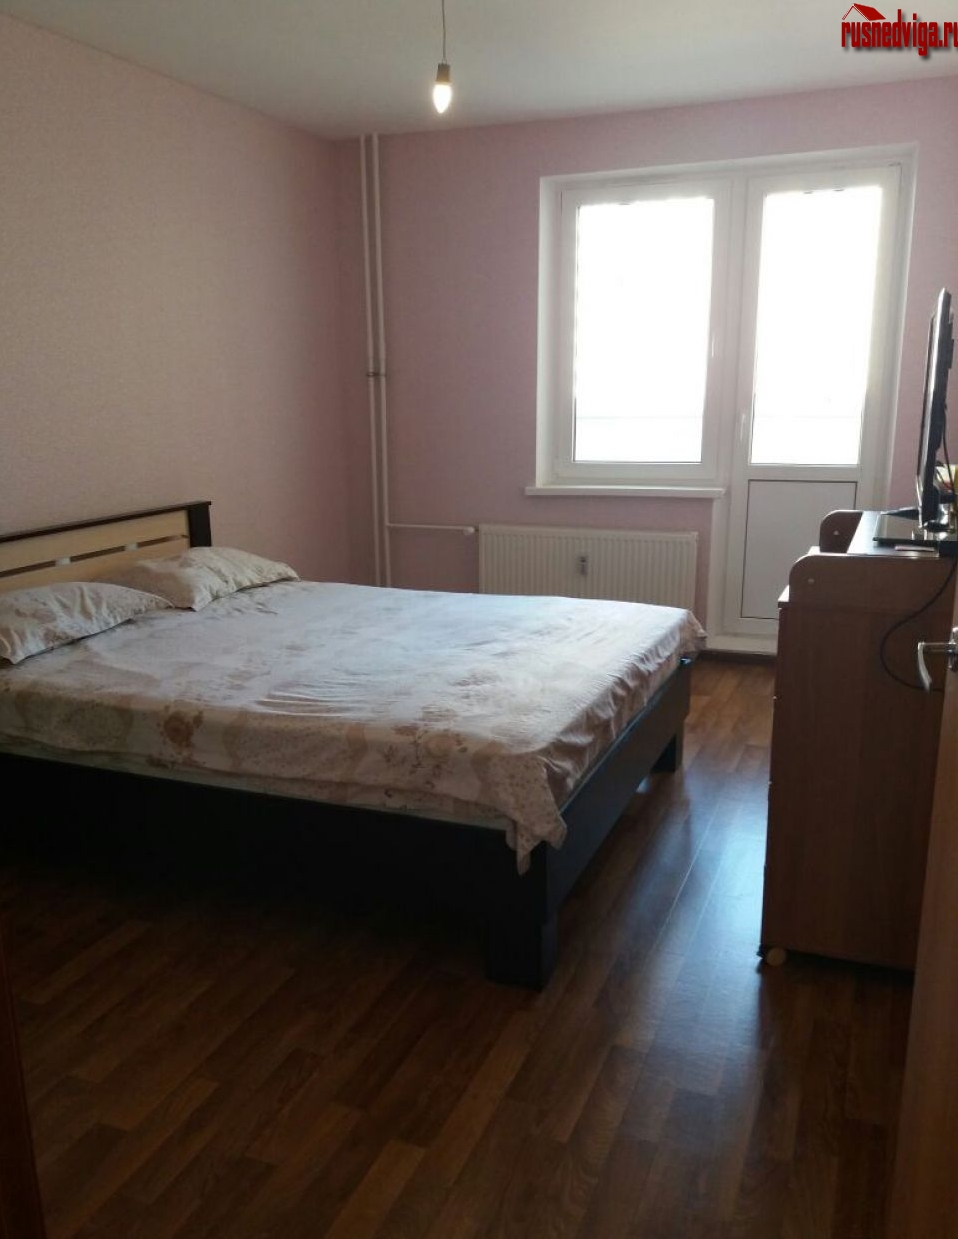 В районе Суворовского жилого комплекса, сдается трех комнатная квартира, с хорошим ремонтом. В